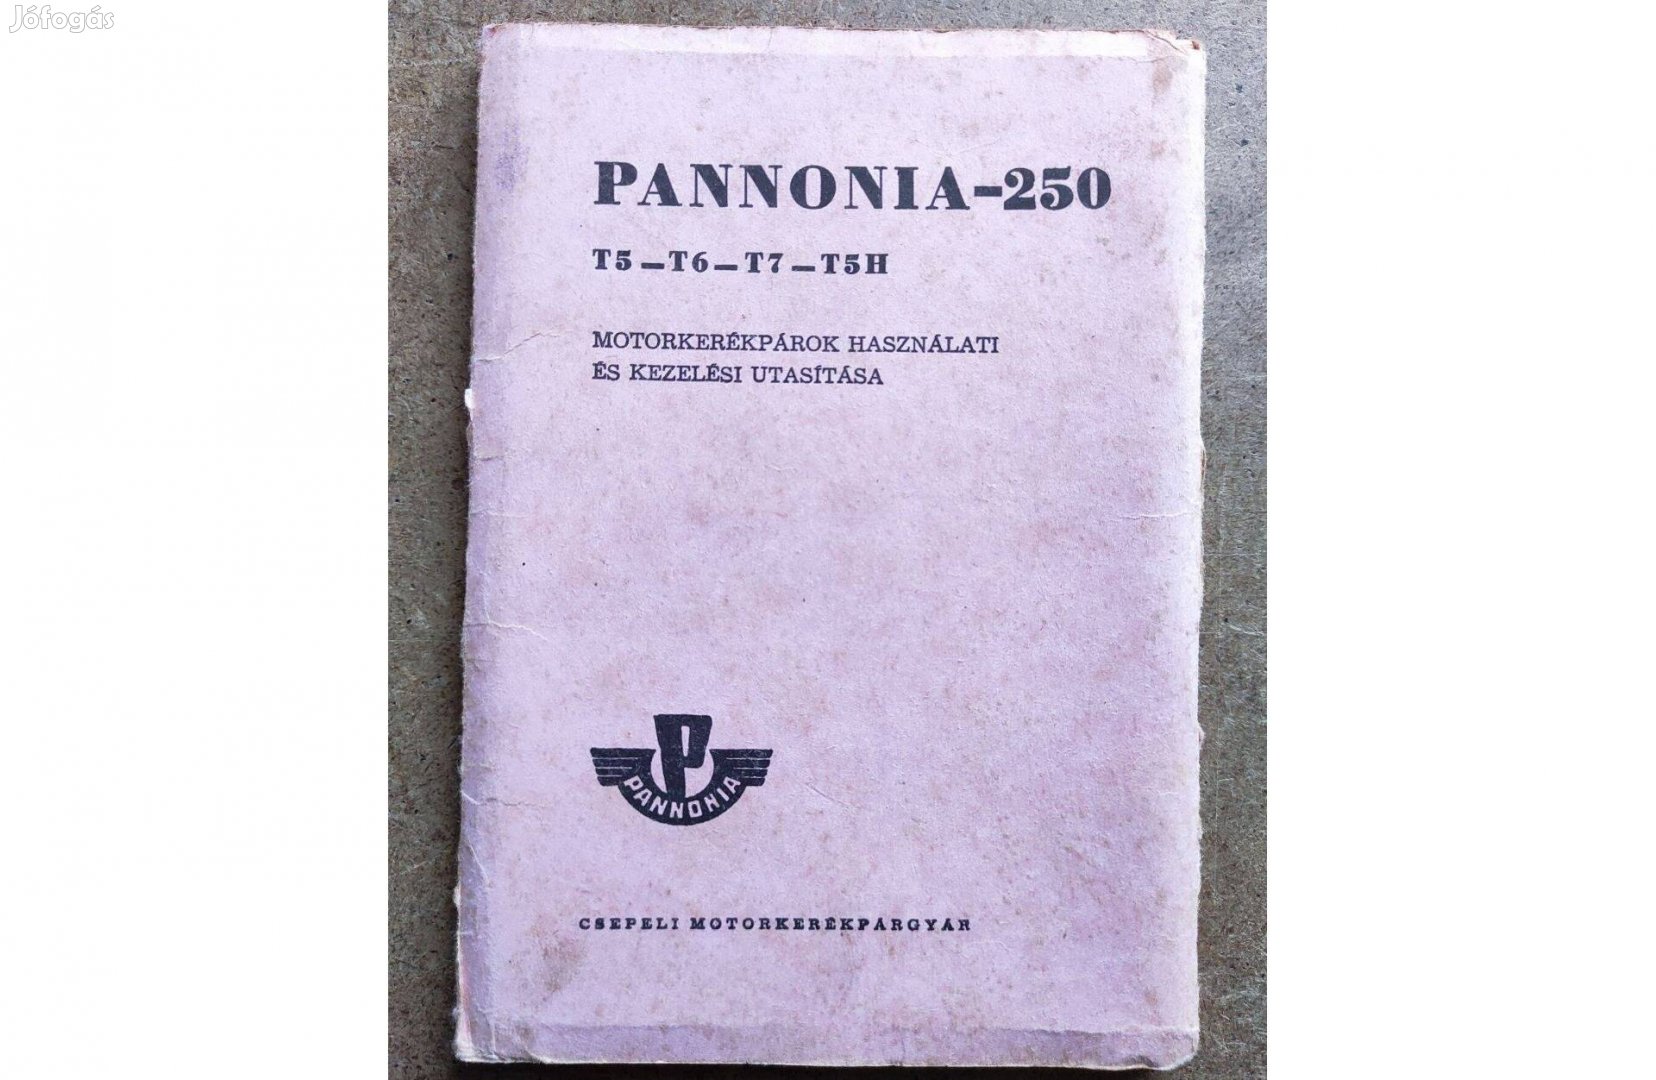 Pannonia 250 T5-T6-T7-T5H kezelési használati utasítás